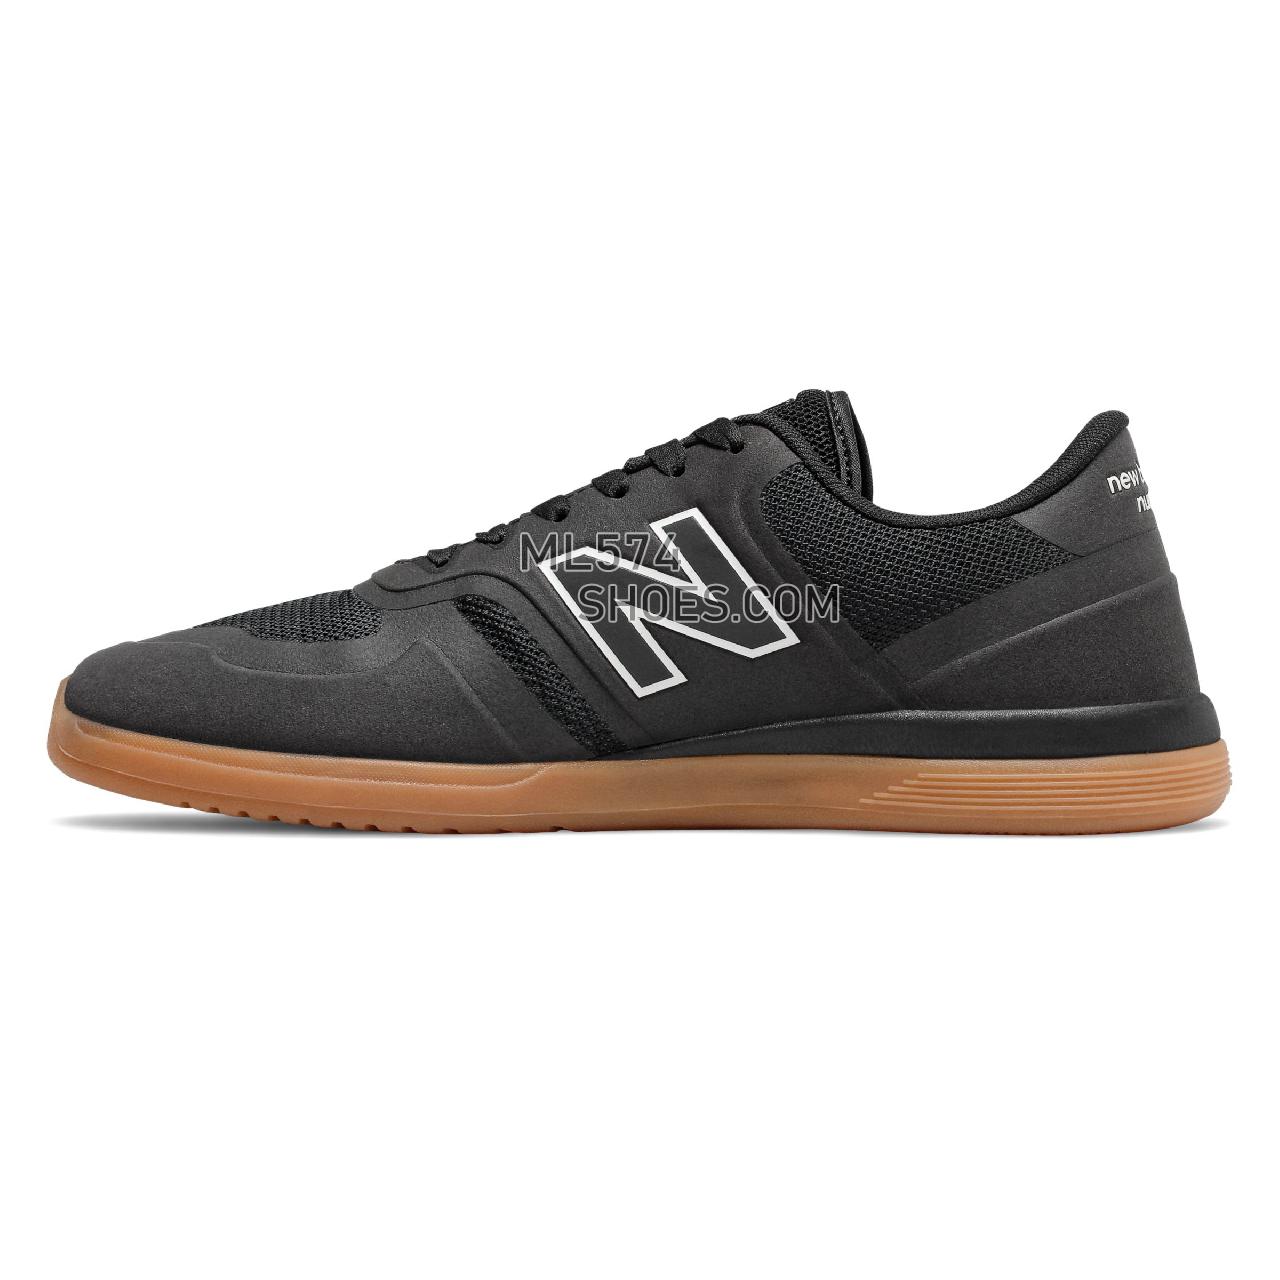 New Balance Numeric 420 - Men's NB Numeric Skate - Black with Gum - NM420GUM